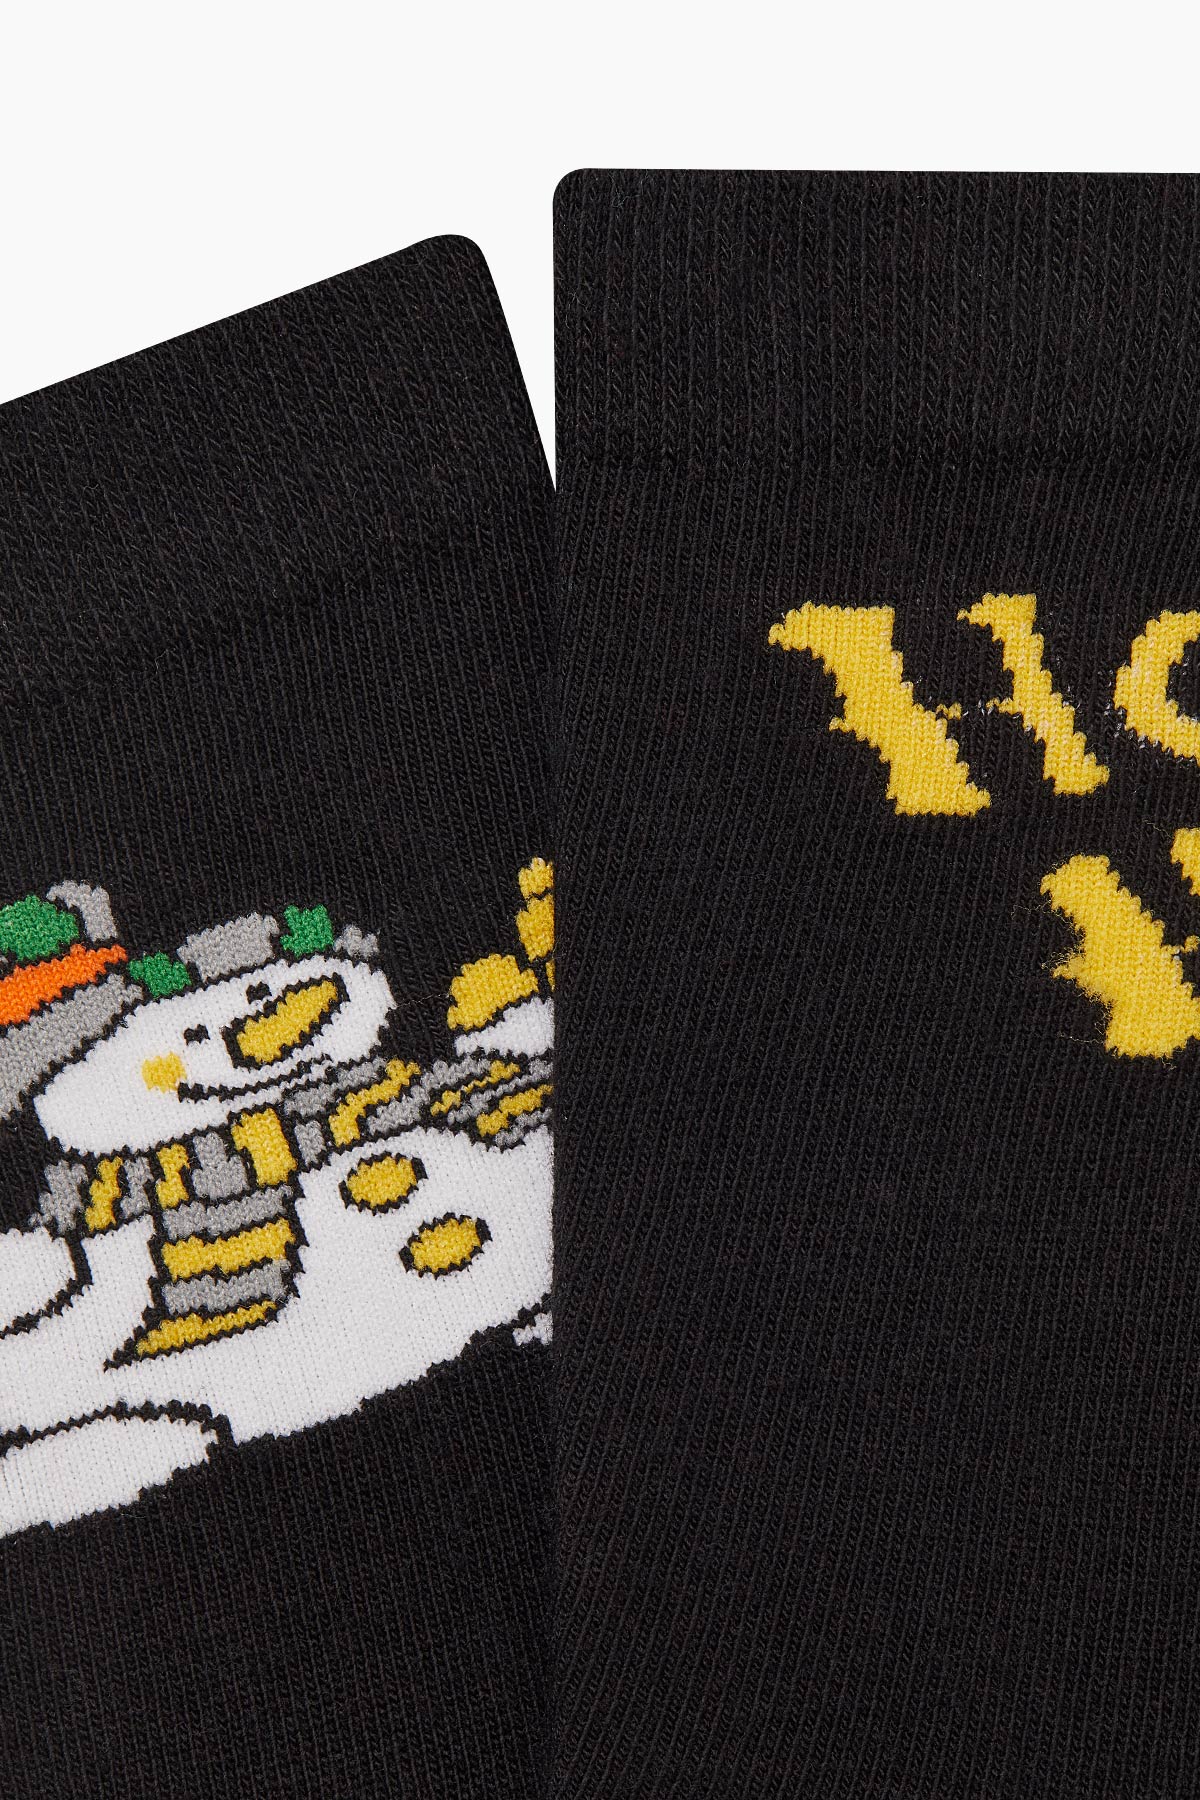 Bross Ho Ho Printed Unisex Christmas Socks - Thumbnail